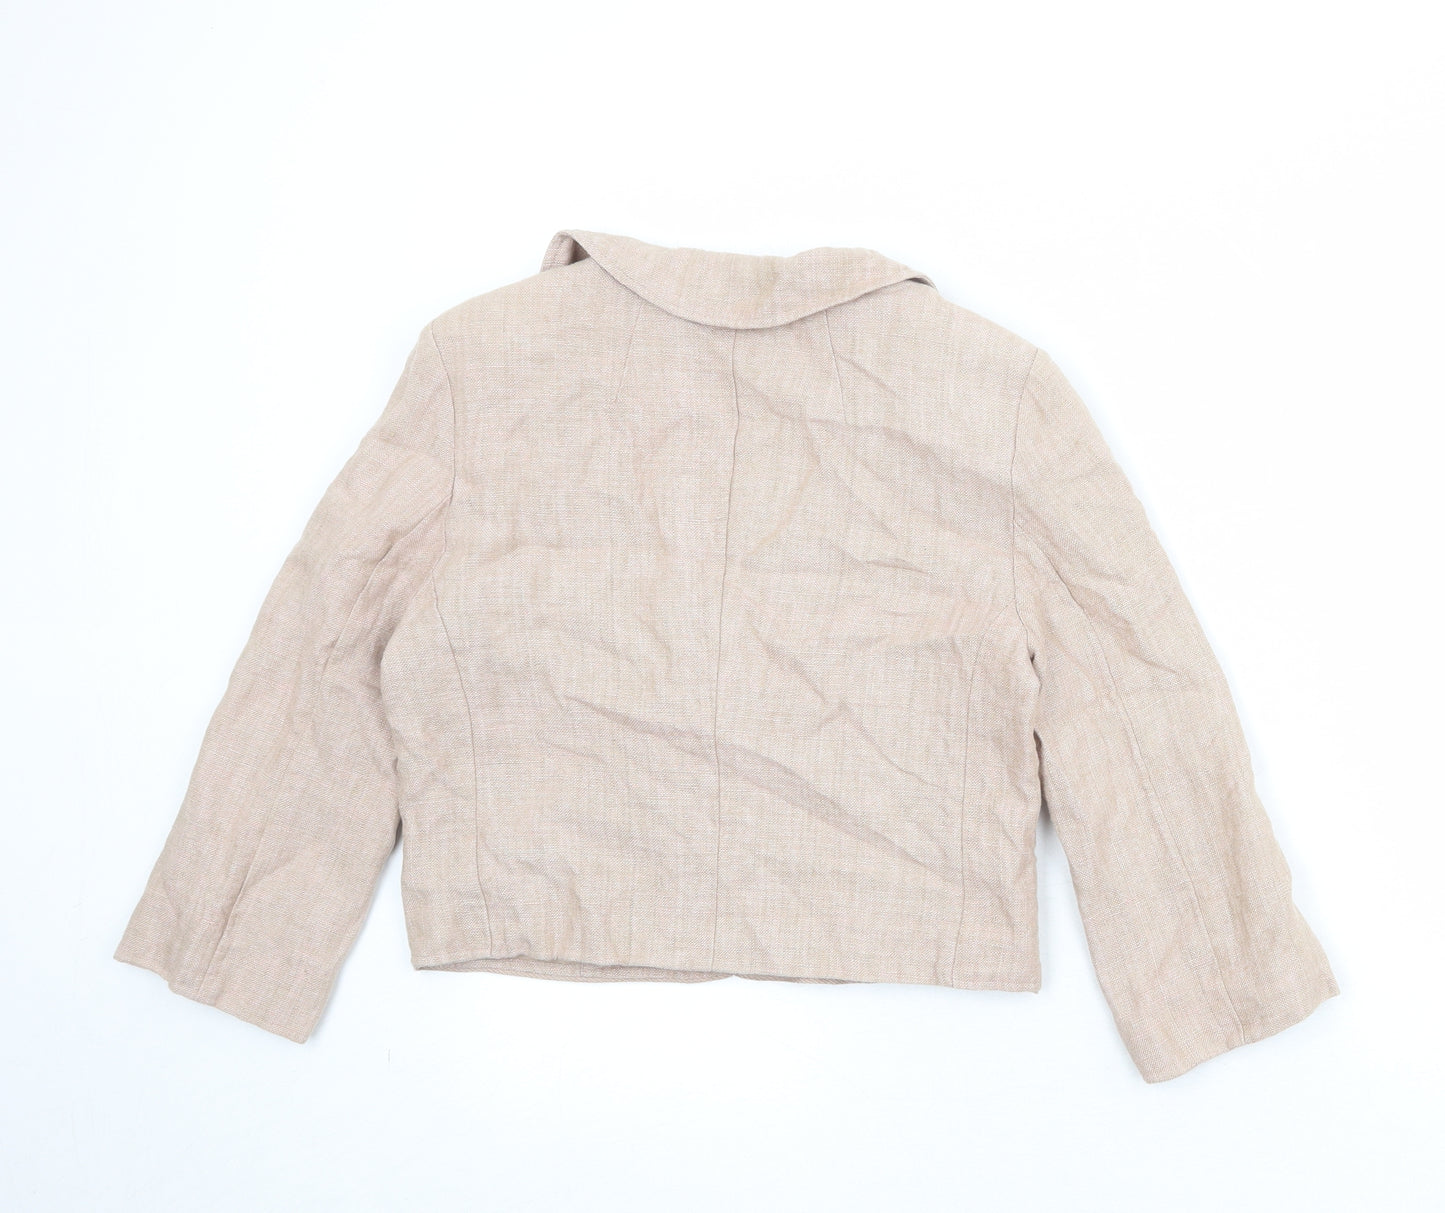 H&M Womens Beige Linen Jacket Blazer Size 10 Button